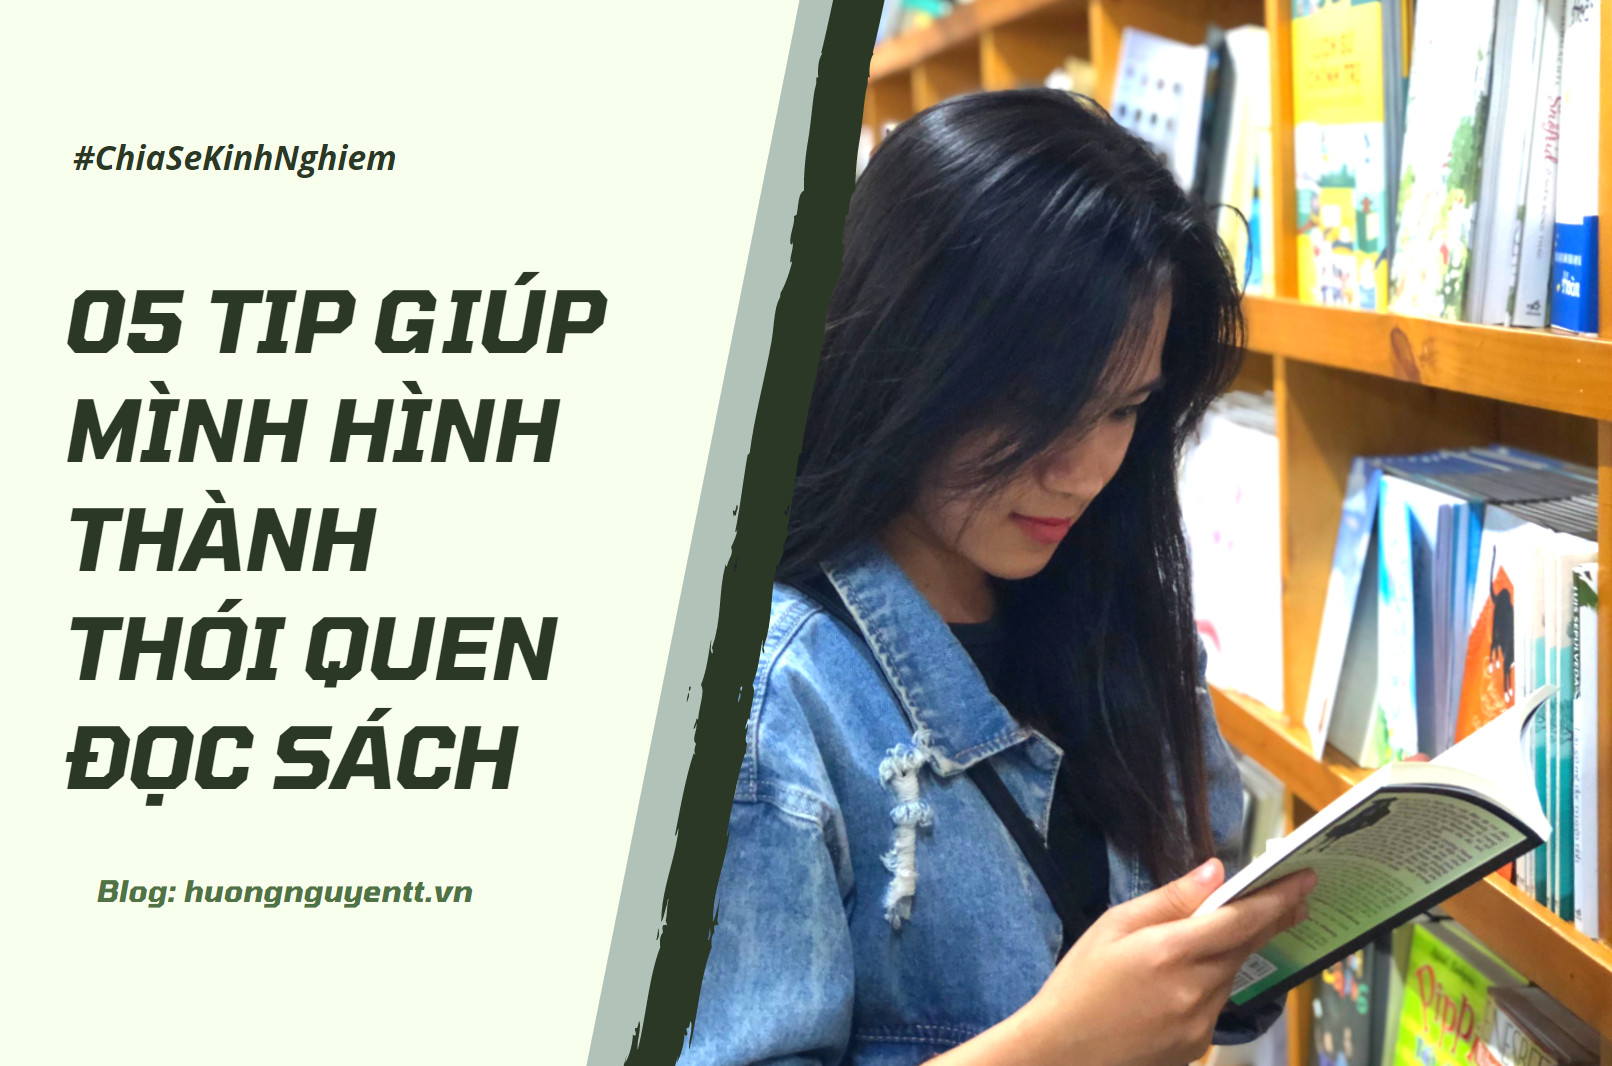 5 Tip giúp mình hình thành thói quen đọc sách - Hương Nguyễn Blog